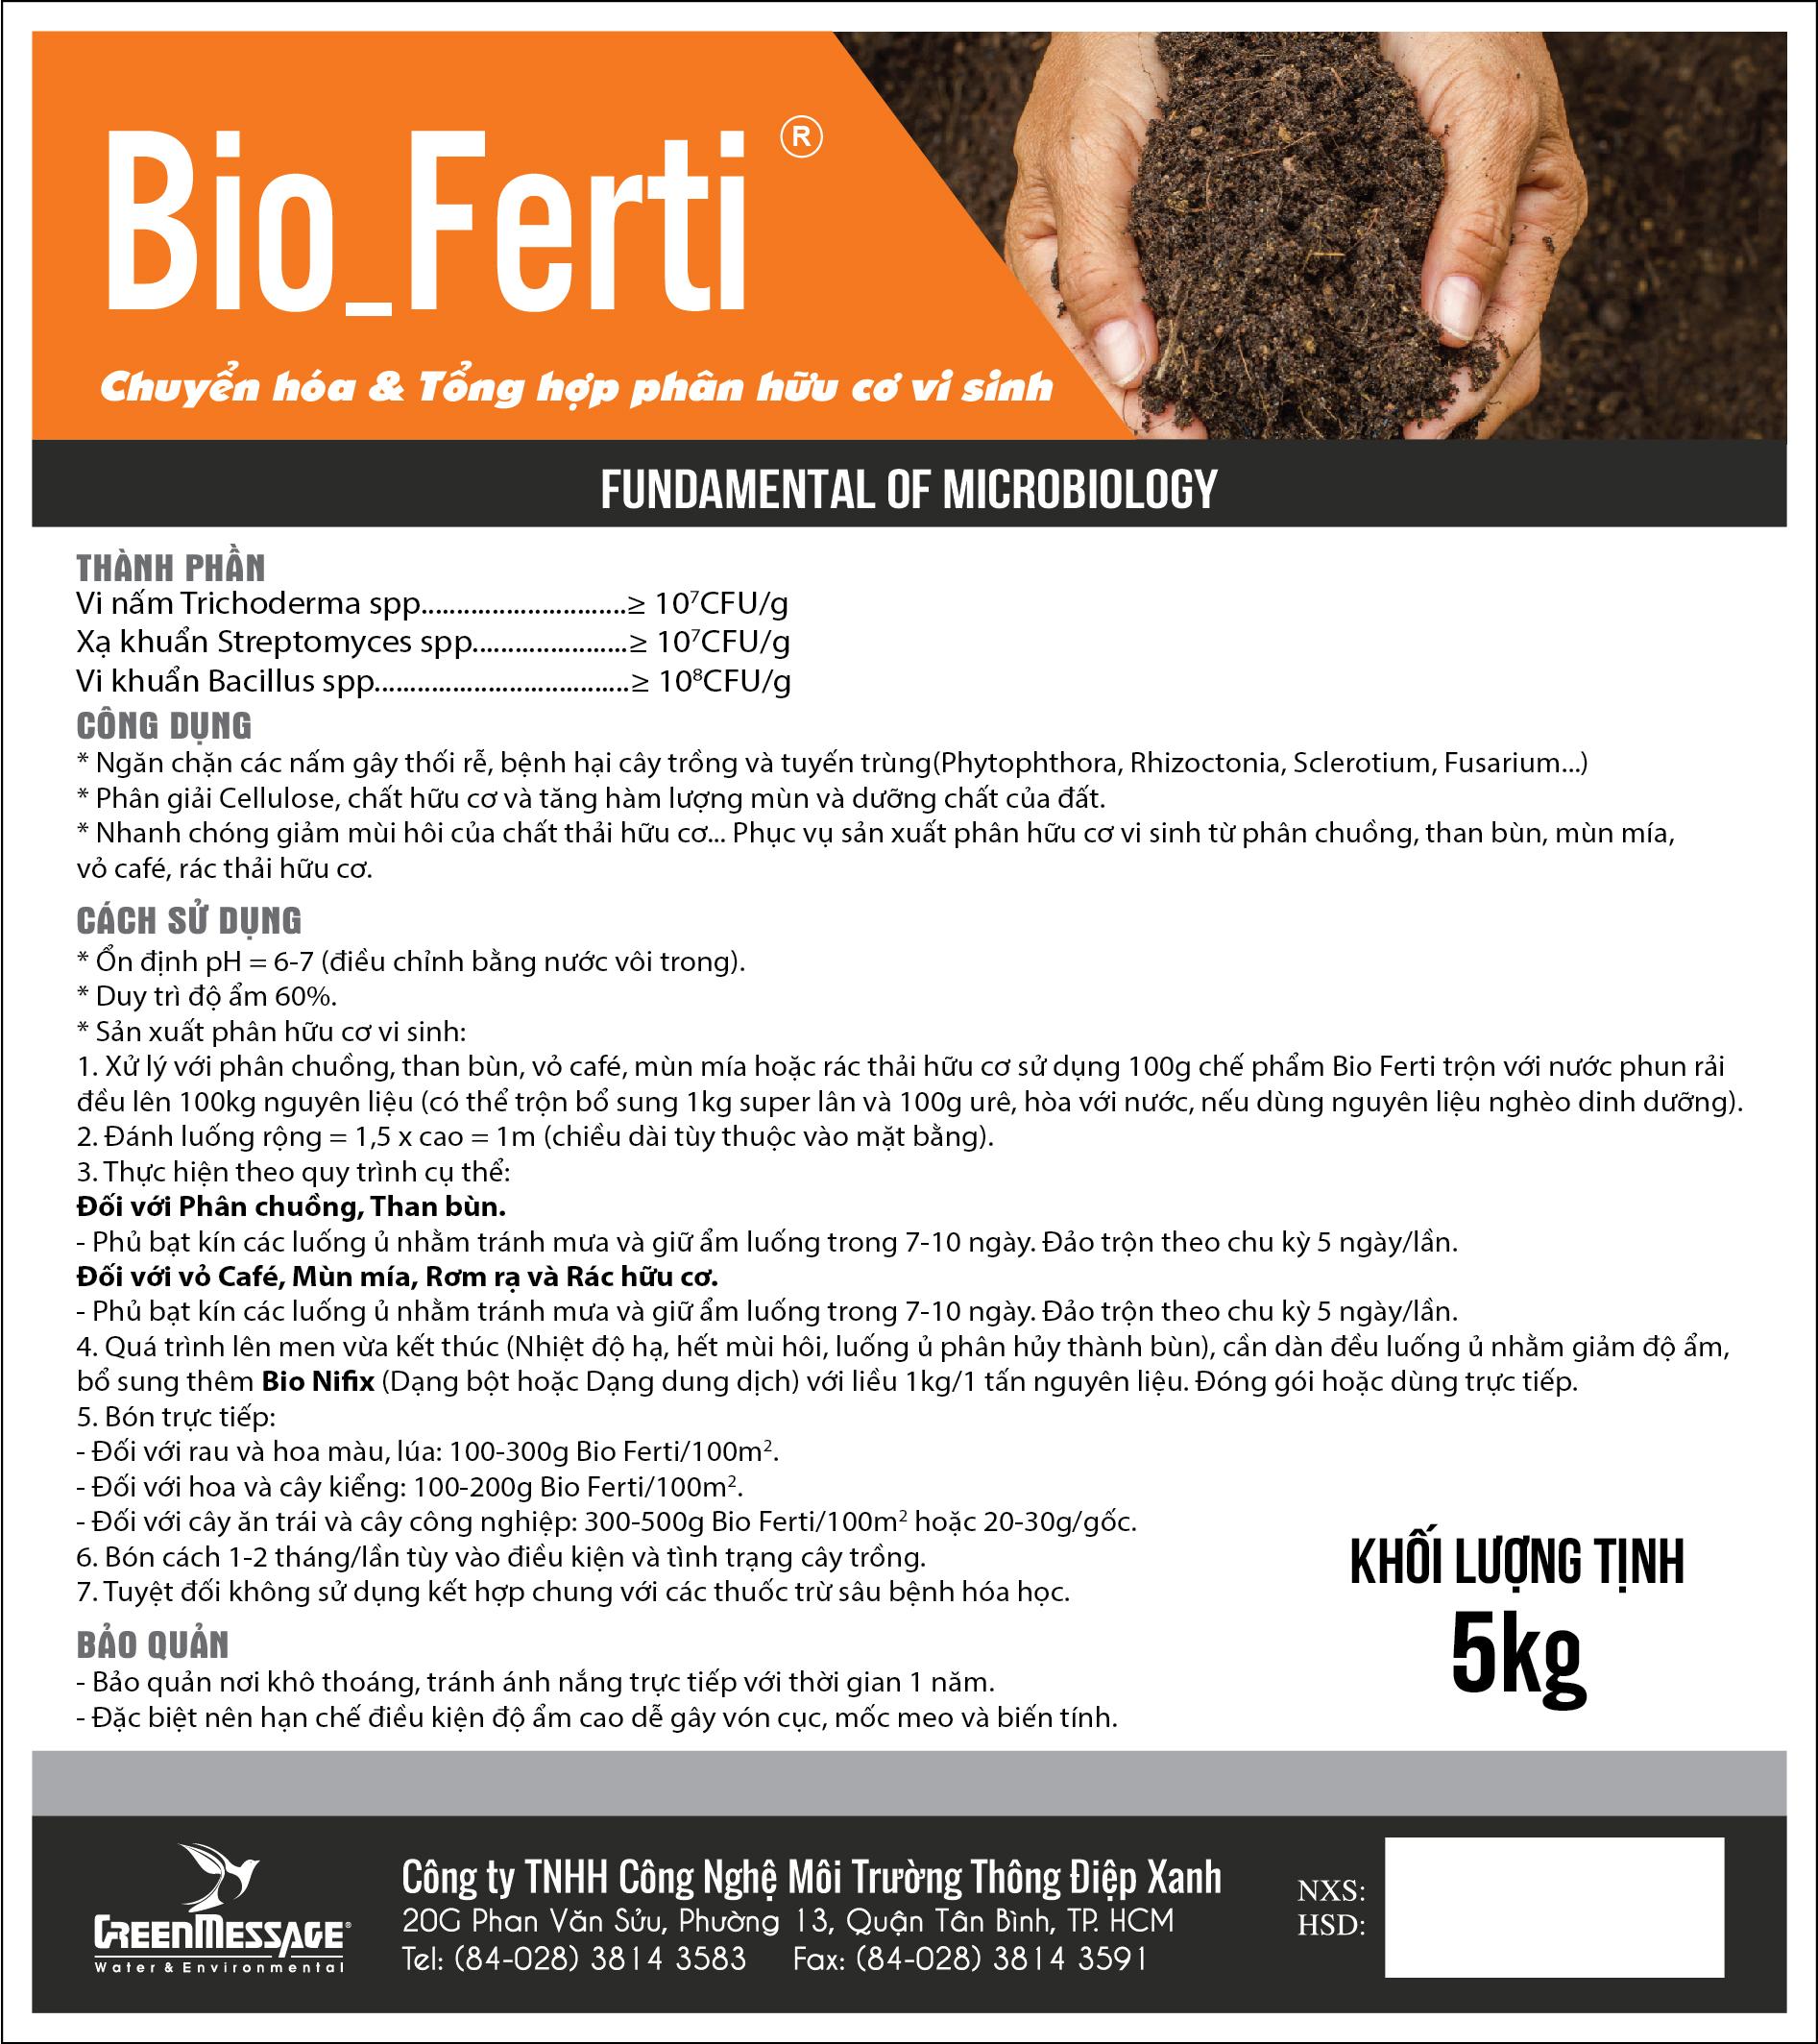 Bio_Ferti - Chế phẩm vi sinh chuyển hóa và tổng hợp phân hữu cơ vi sinh